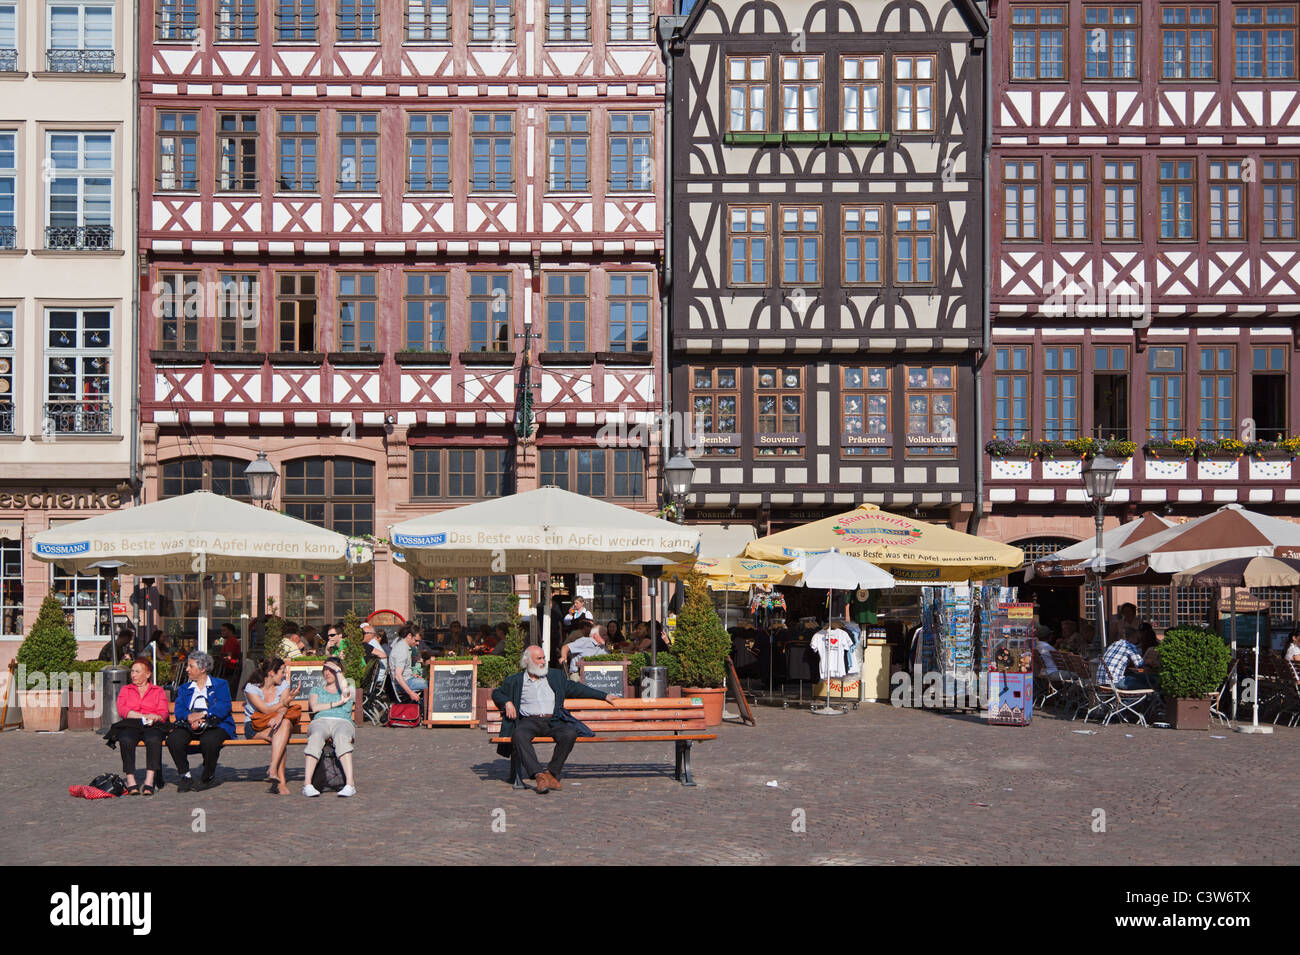 Eine Feder Ansicht des Frankfurter Römers (Römerberg), eines der historischeren Quadrate in der Stadt. Stockfoto